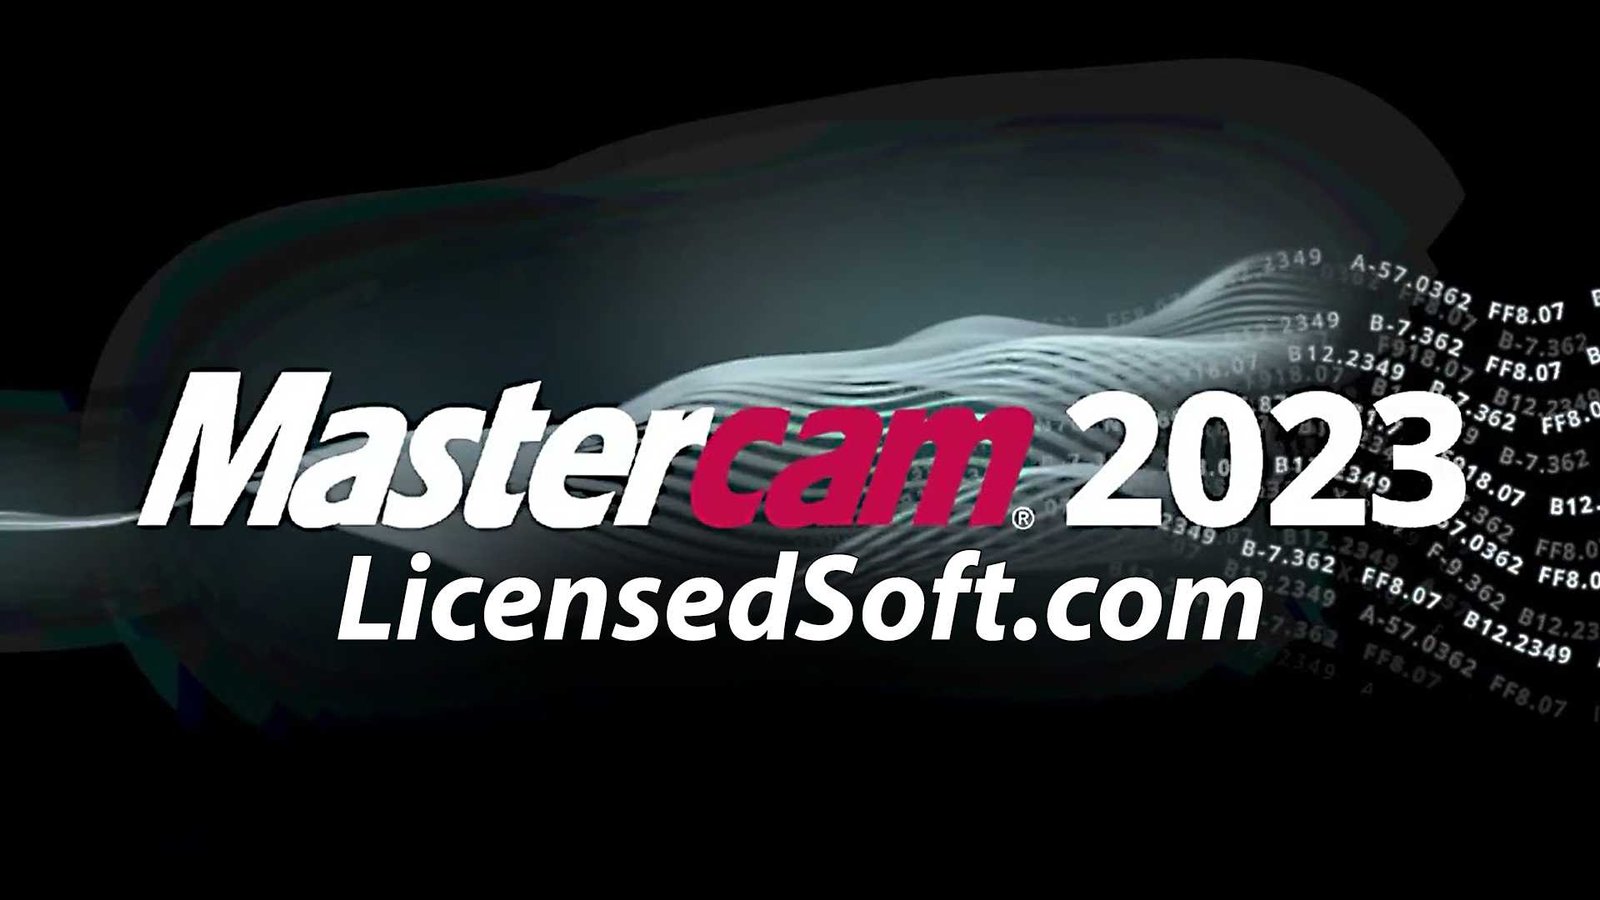 Mastercam 2023 v25.0.15584.0 Lifetime License Cover Image By LicensedSoft